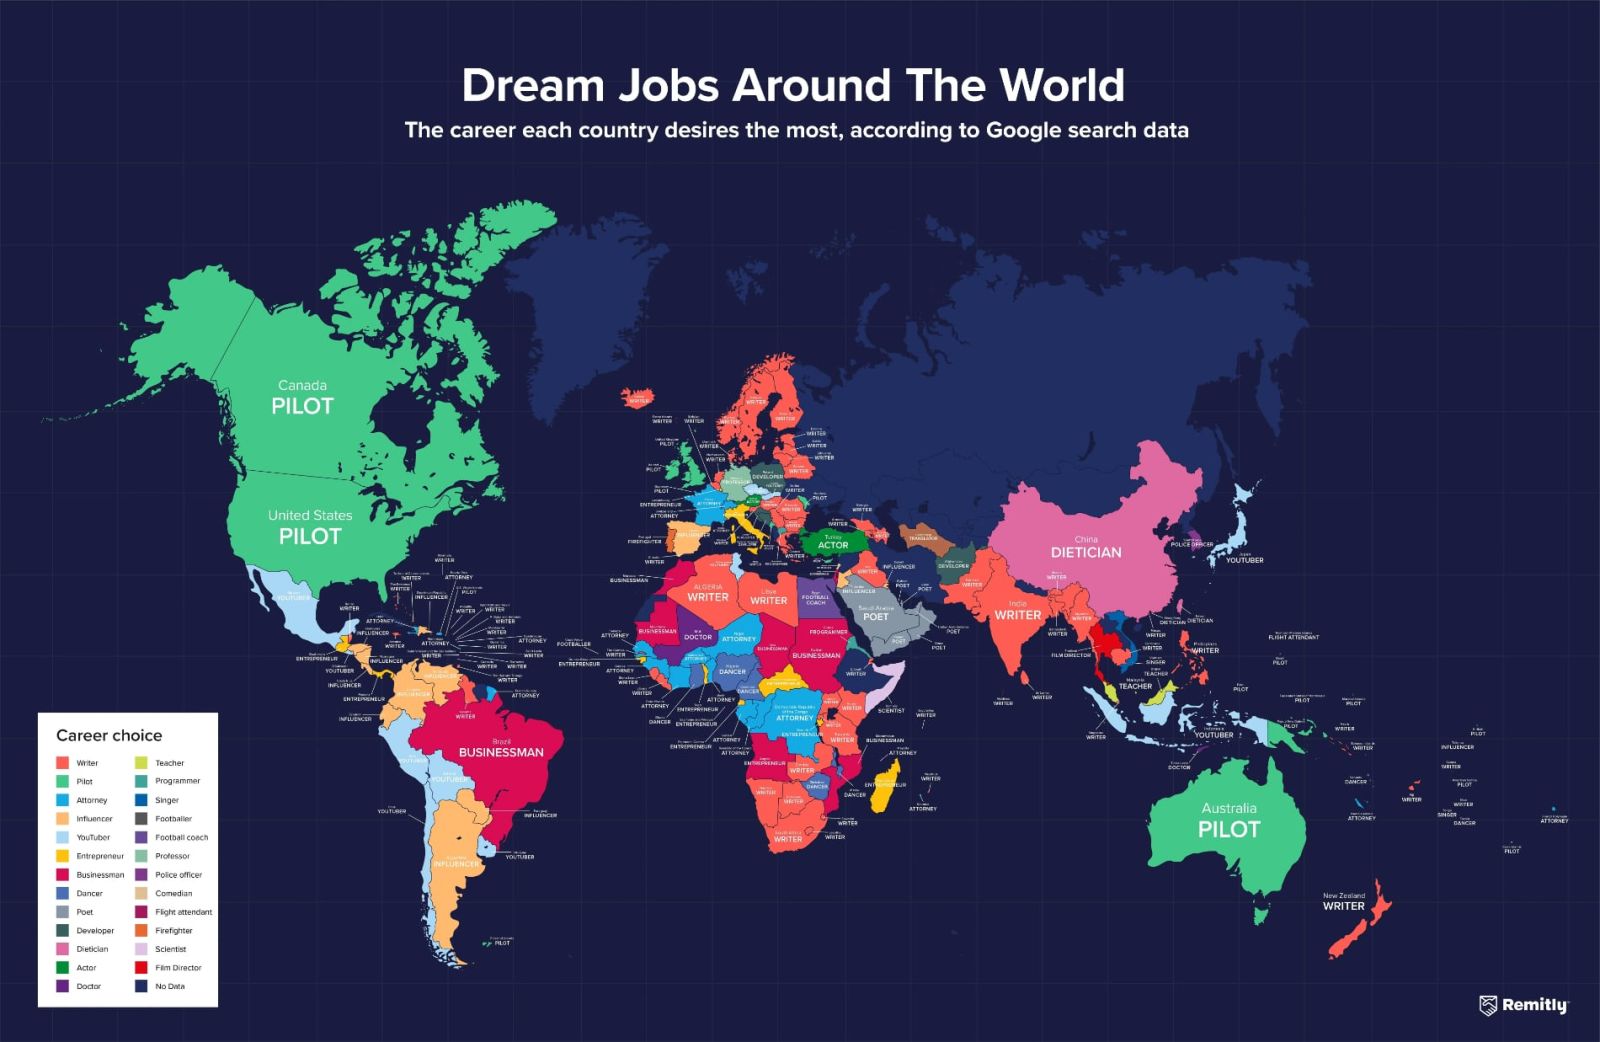 trabajo soñado según cada país